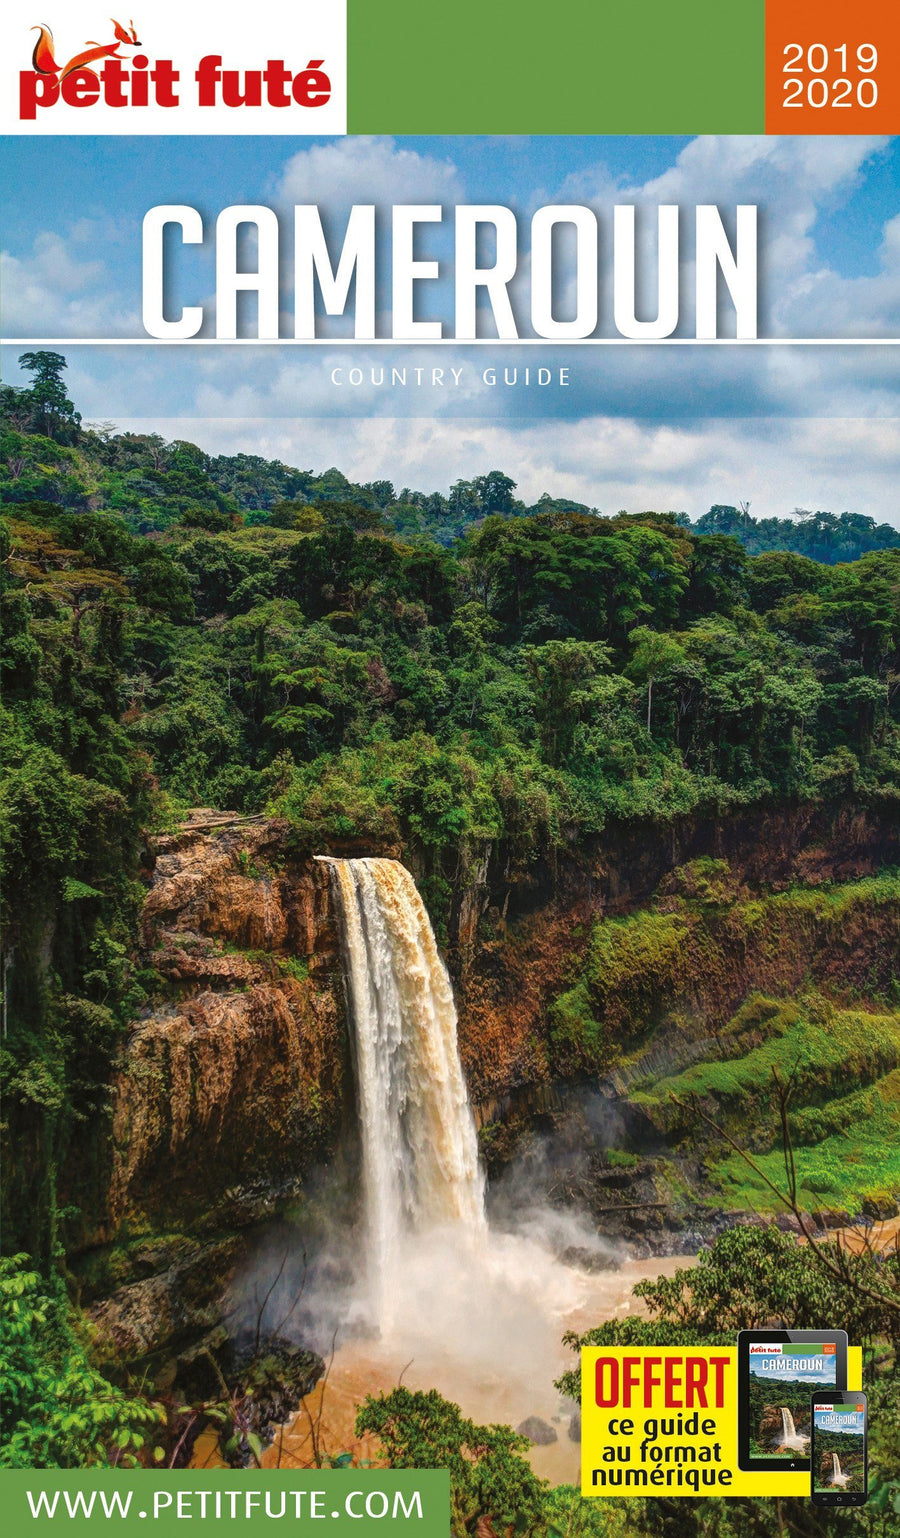 Guide de voyage - Cameroun 2020/21 | Petit Futé guide de voyage Petit Futé 